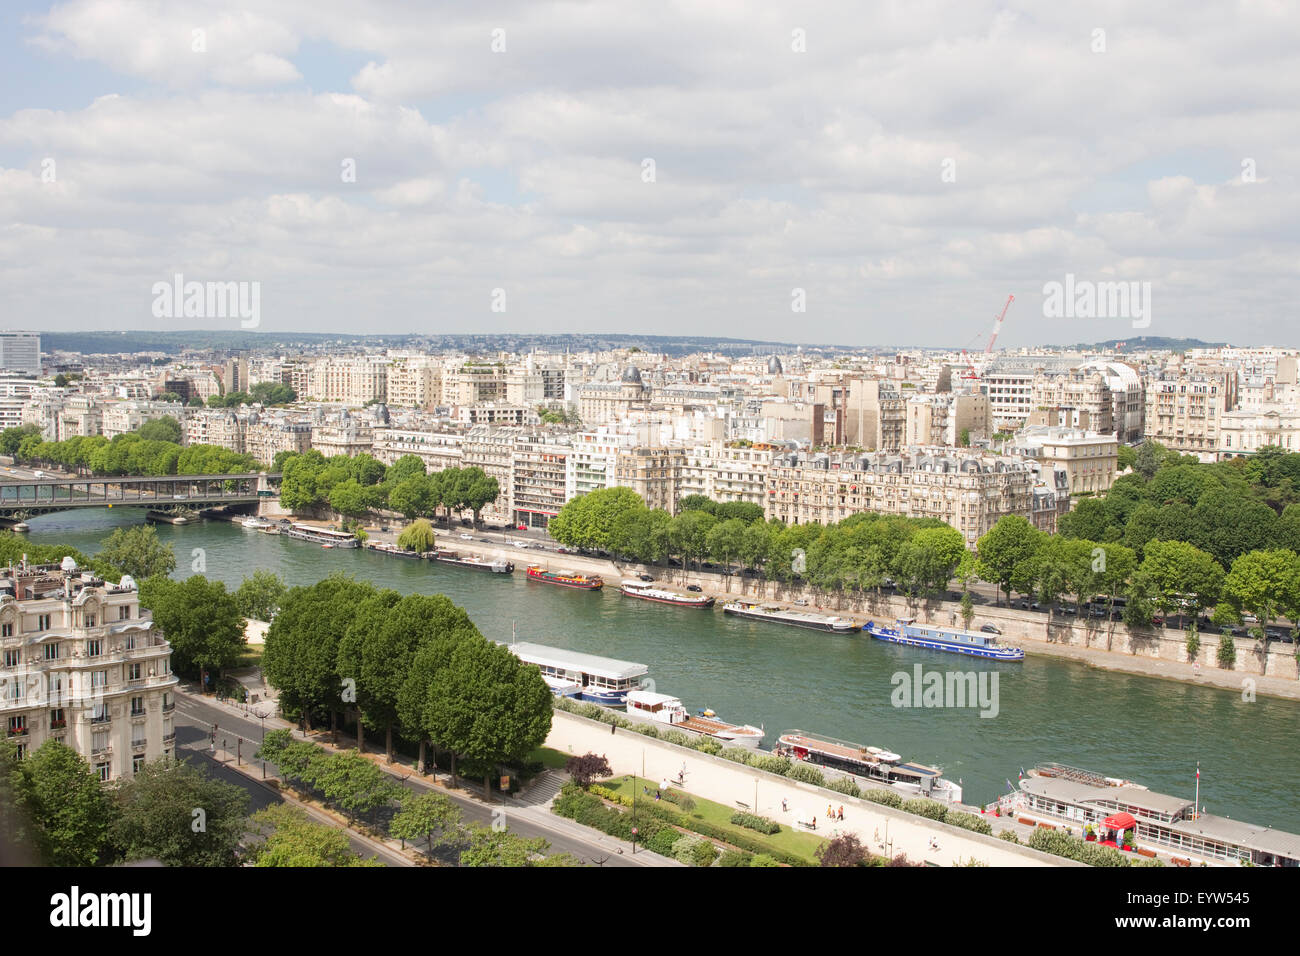 Blick vom 1. Stock-Aussichtsplattform des Eiffelturms zeigt das 16. Arrondissement von Paris (Passy) und die Seine. Stockfoto